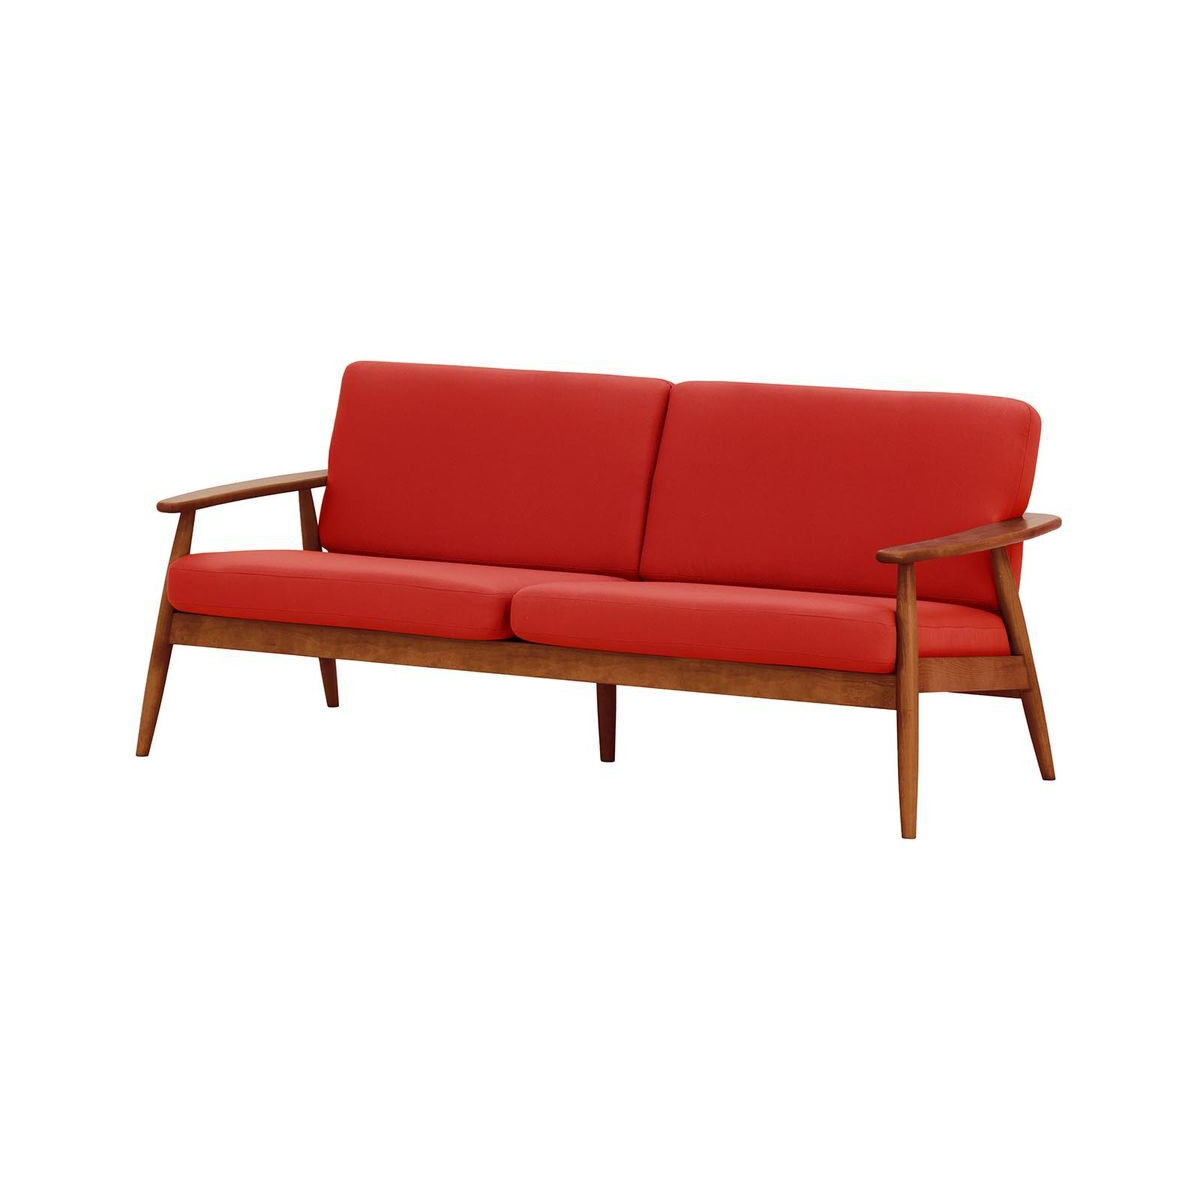 Demure Aqua 3 Seater Garden Sofa, red, Leg colour: 8011 aveo - image 1